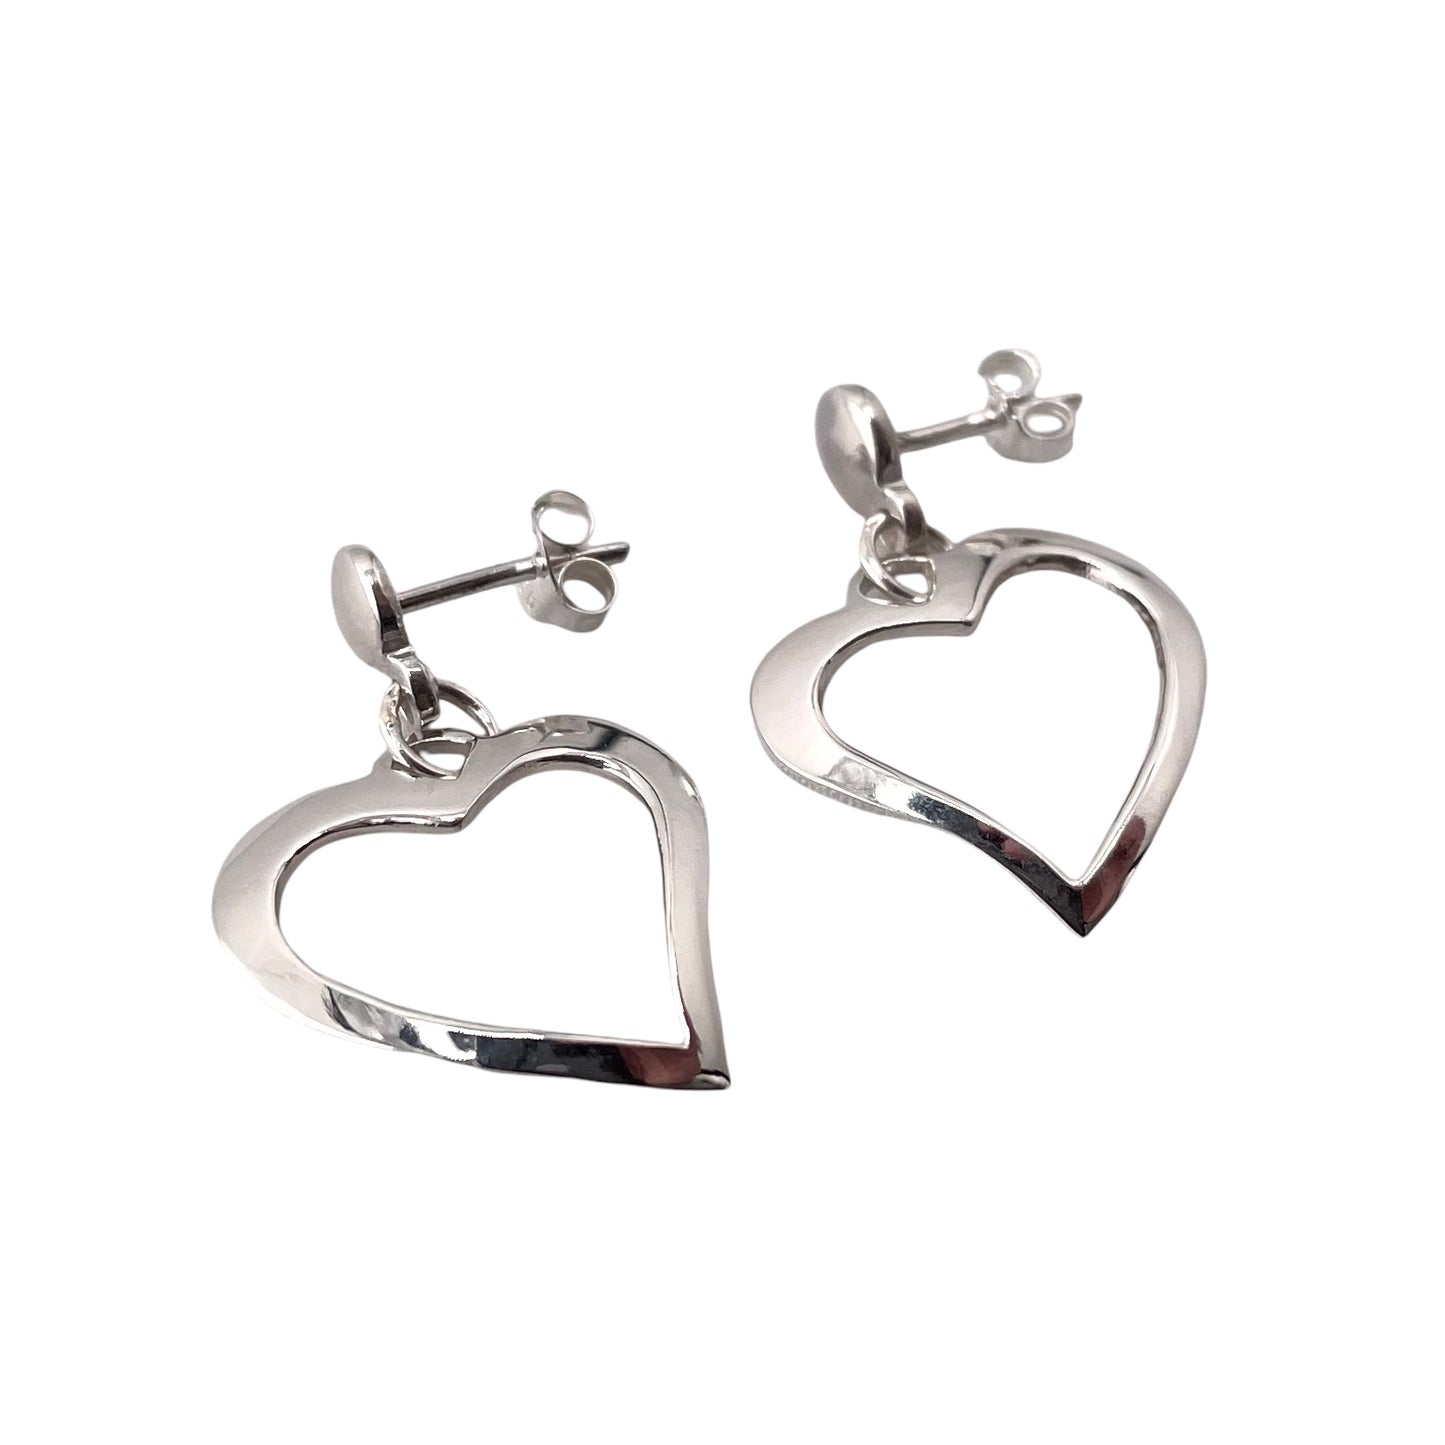 Heart Drop Post Earrings Sterling Silver